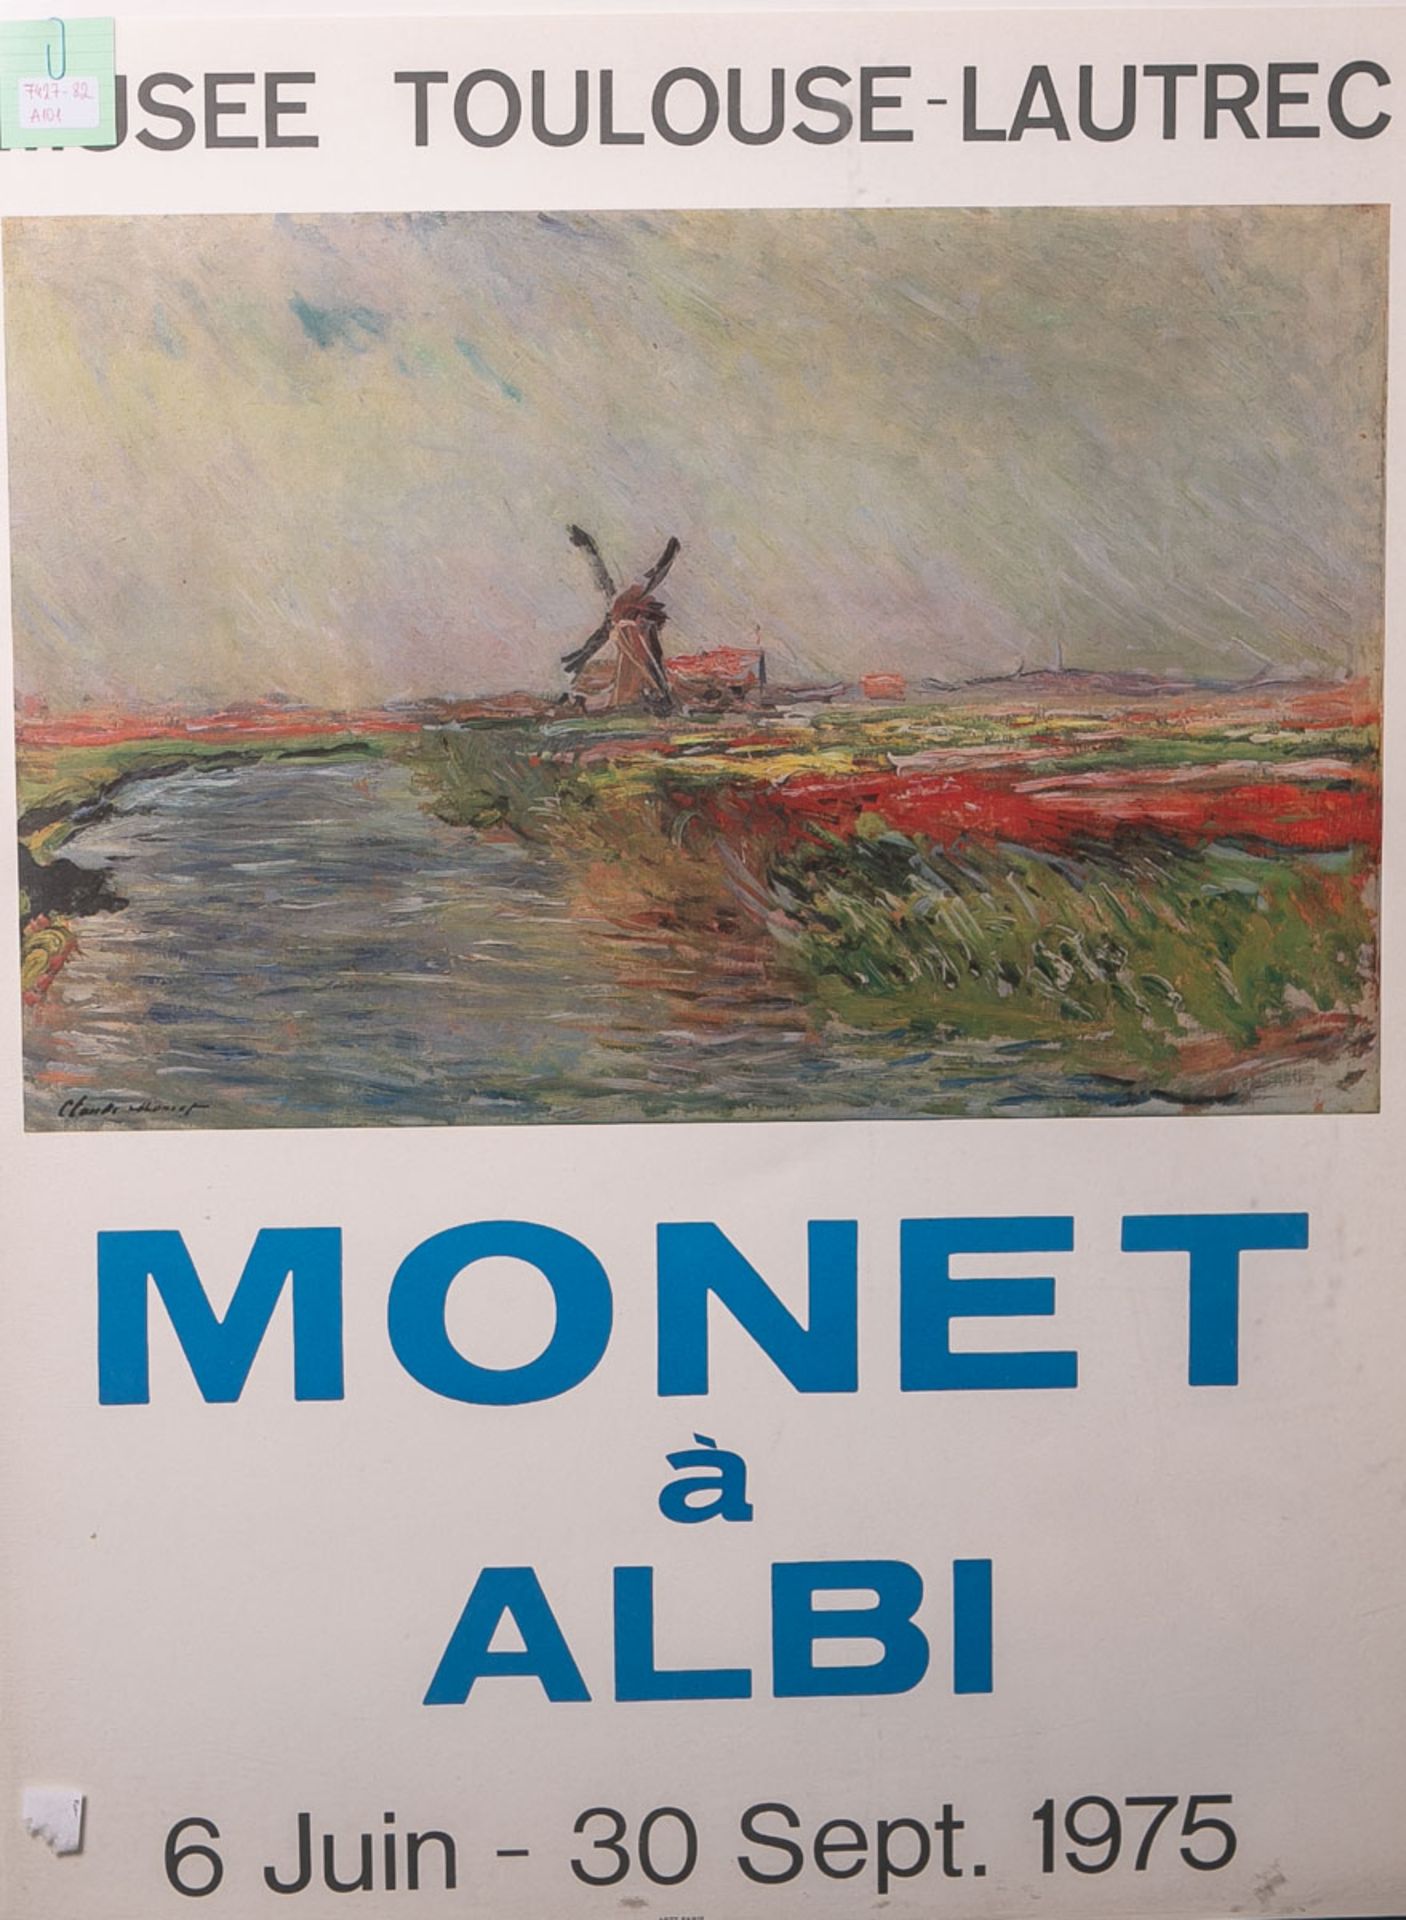 Ausstellungsplakat "Monet à Albi", Musee Toulouse-Lautrec, 6 Juni - 30 Set. 1975, ca. 70,5 x 53,5